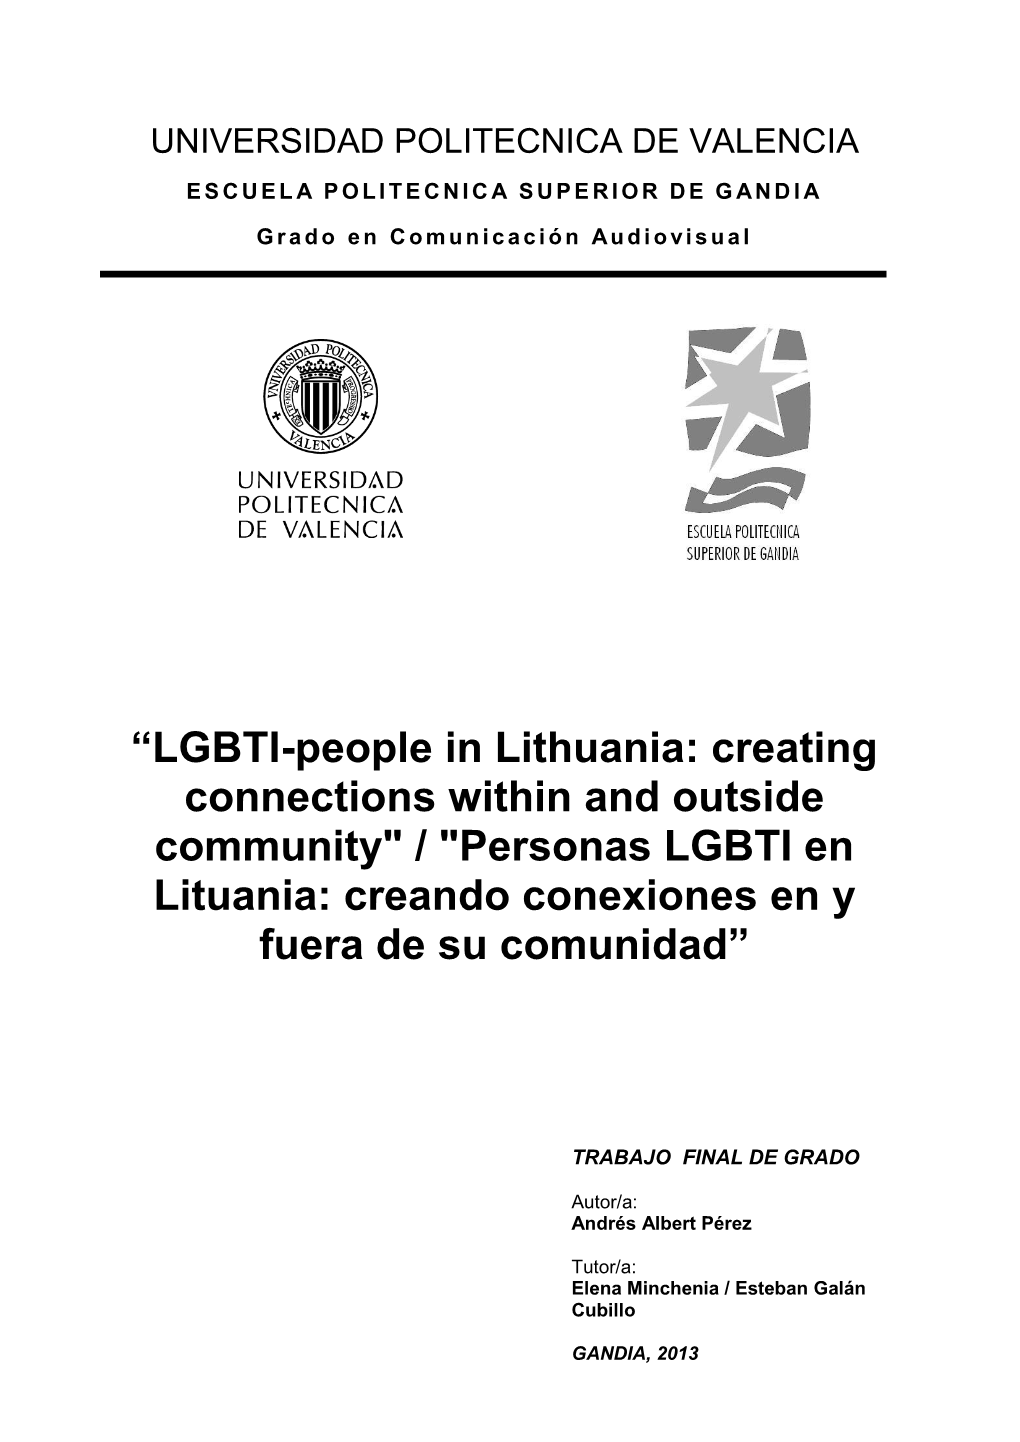 LGBTI-People in Lithuania: Creating Connections Within and Outside Community" / "Personas LGBTI En Lituania: Creando Conexiones En Y Fuera De Su Comunidad”